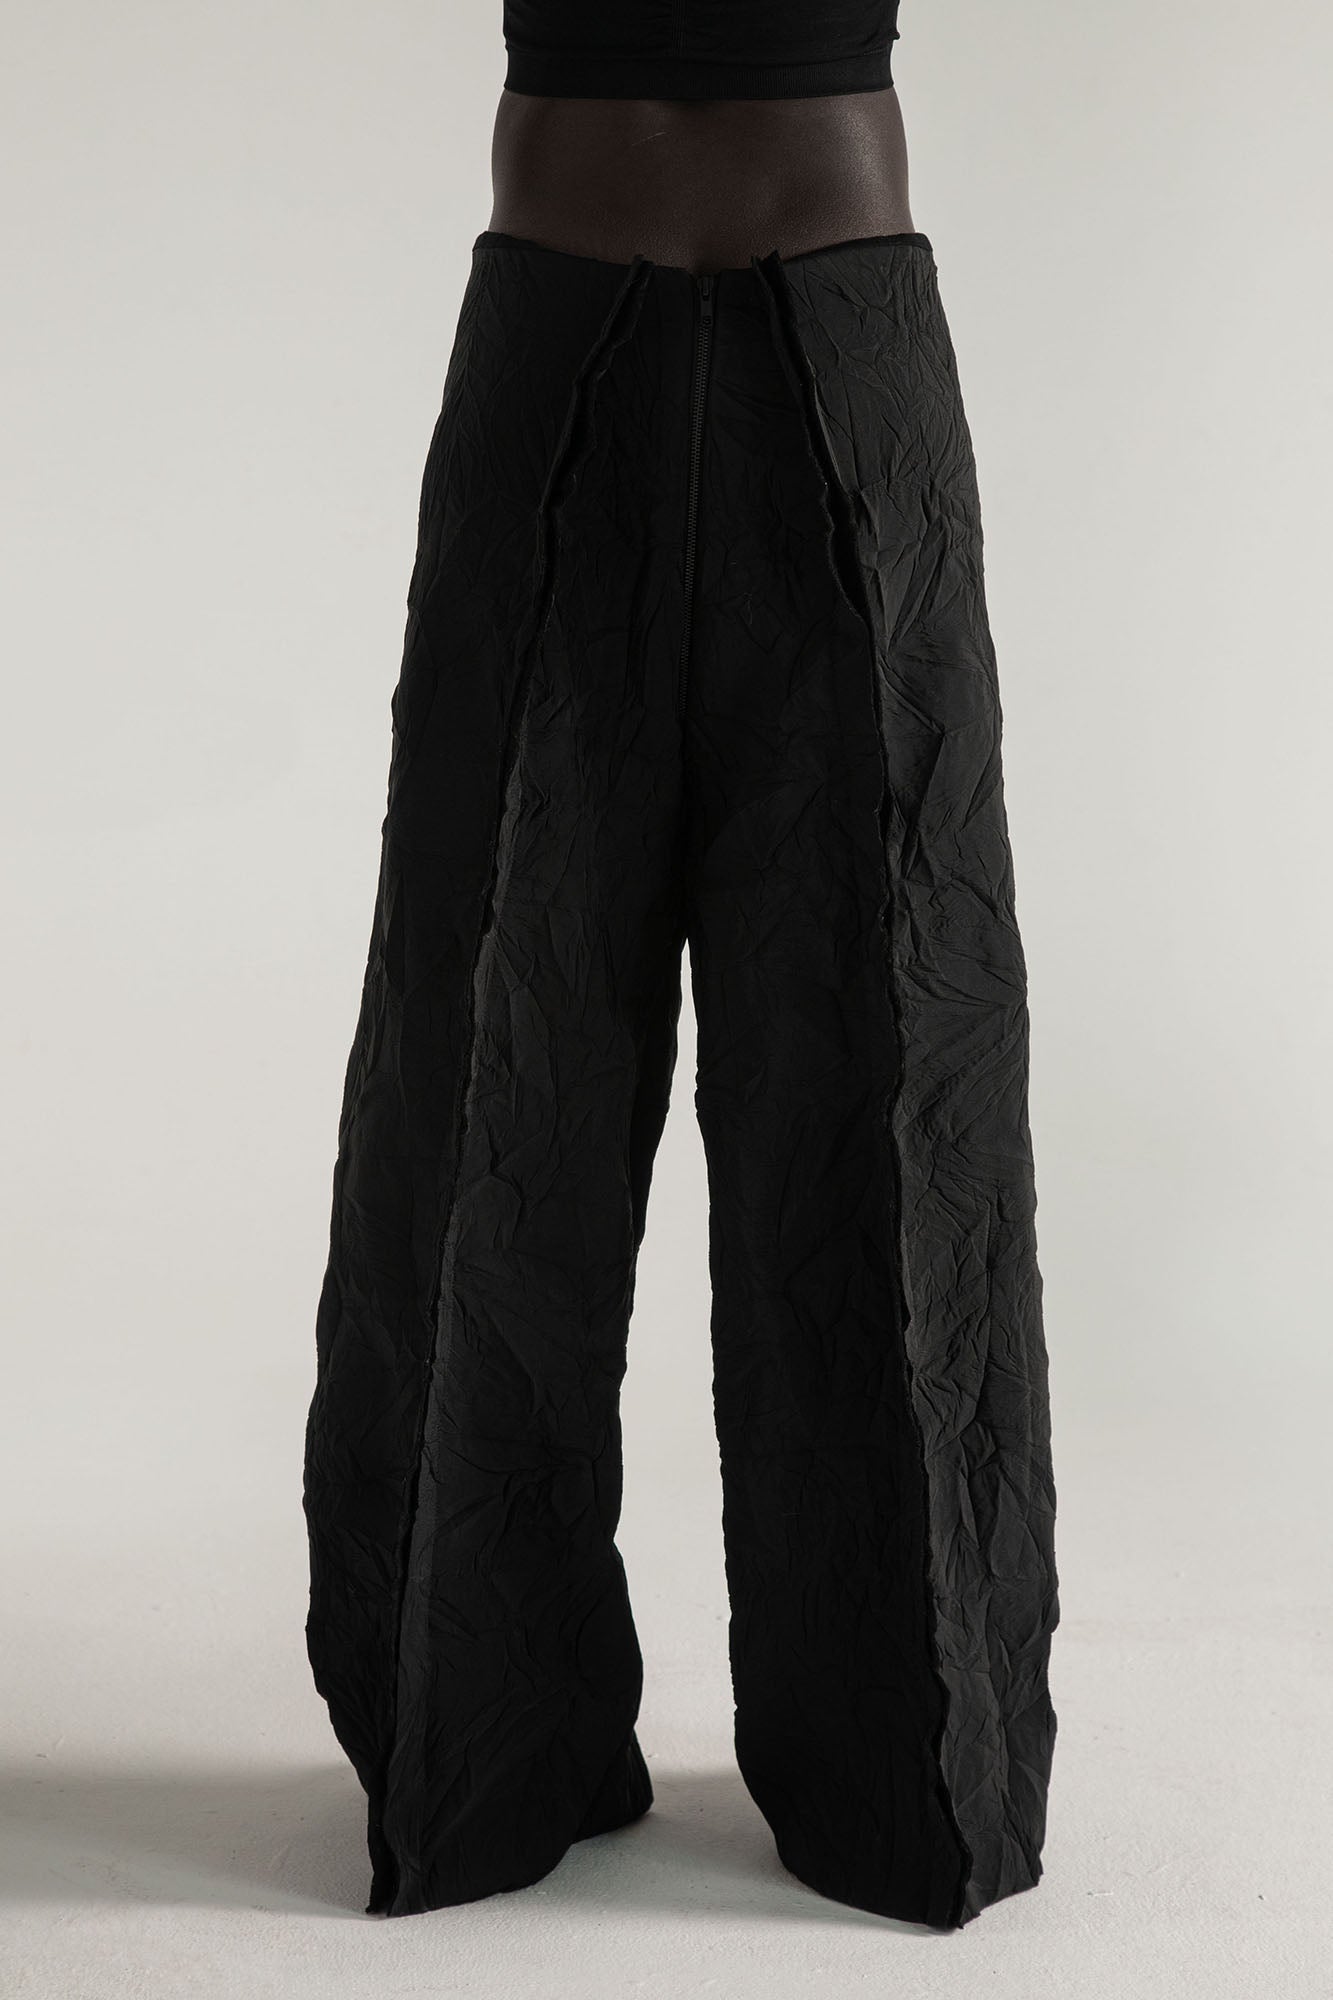 ESCAPE 9-way transforming piece: trousers, jumpsuit, dress, skirt, bag - Avant Gardist